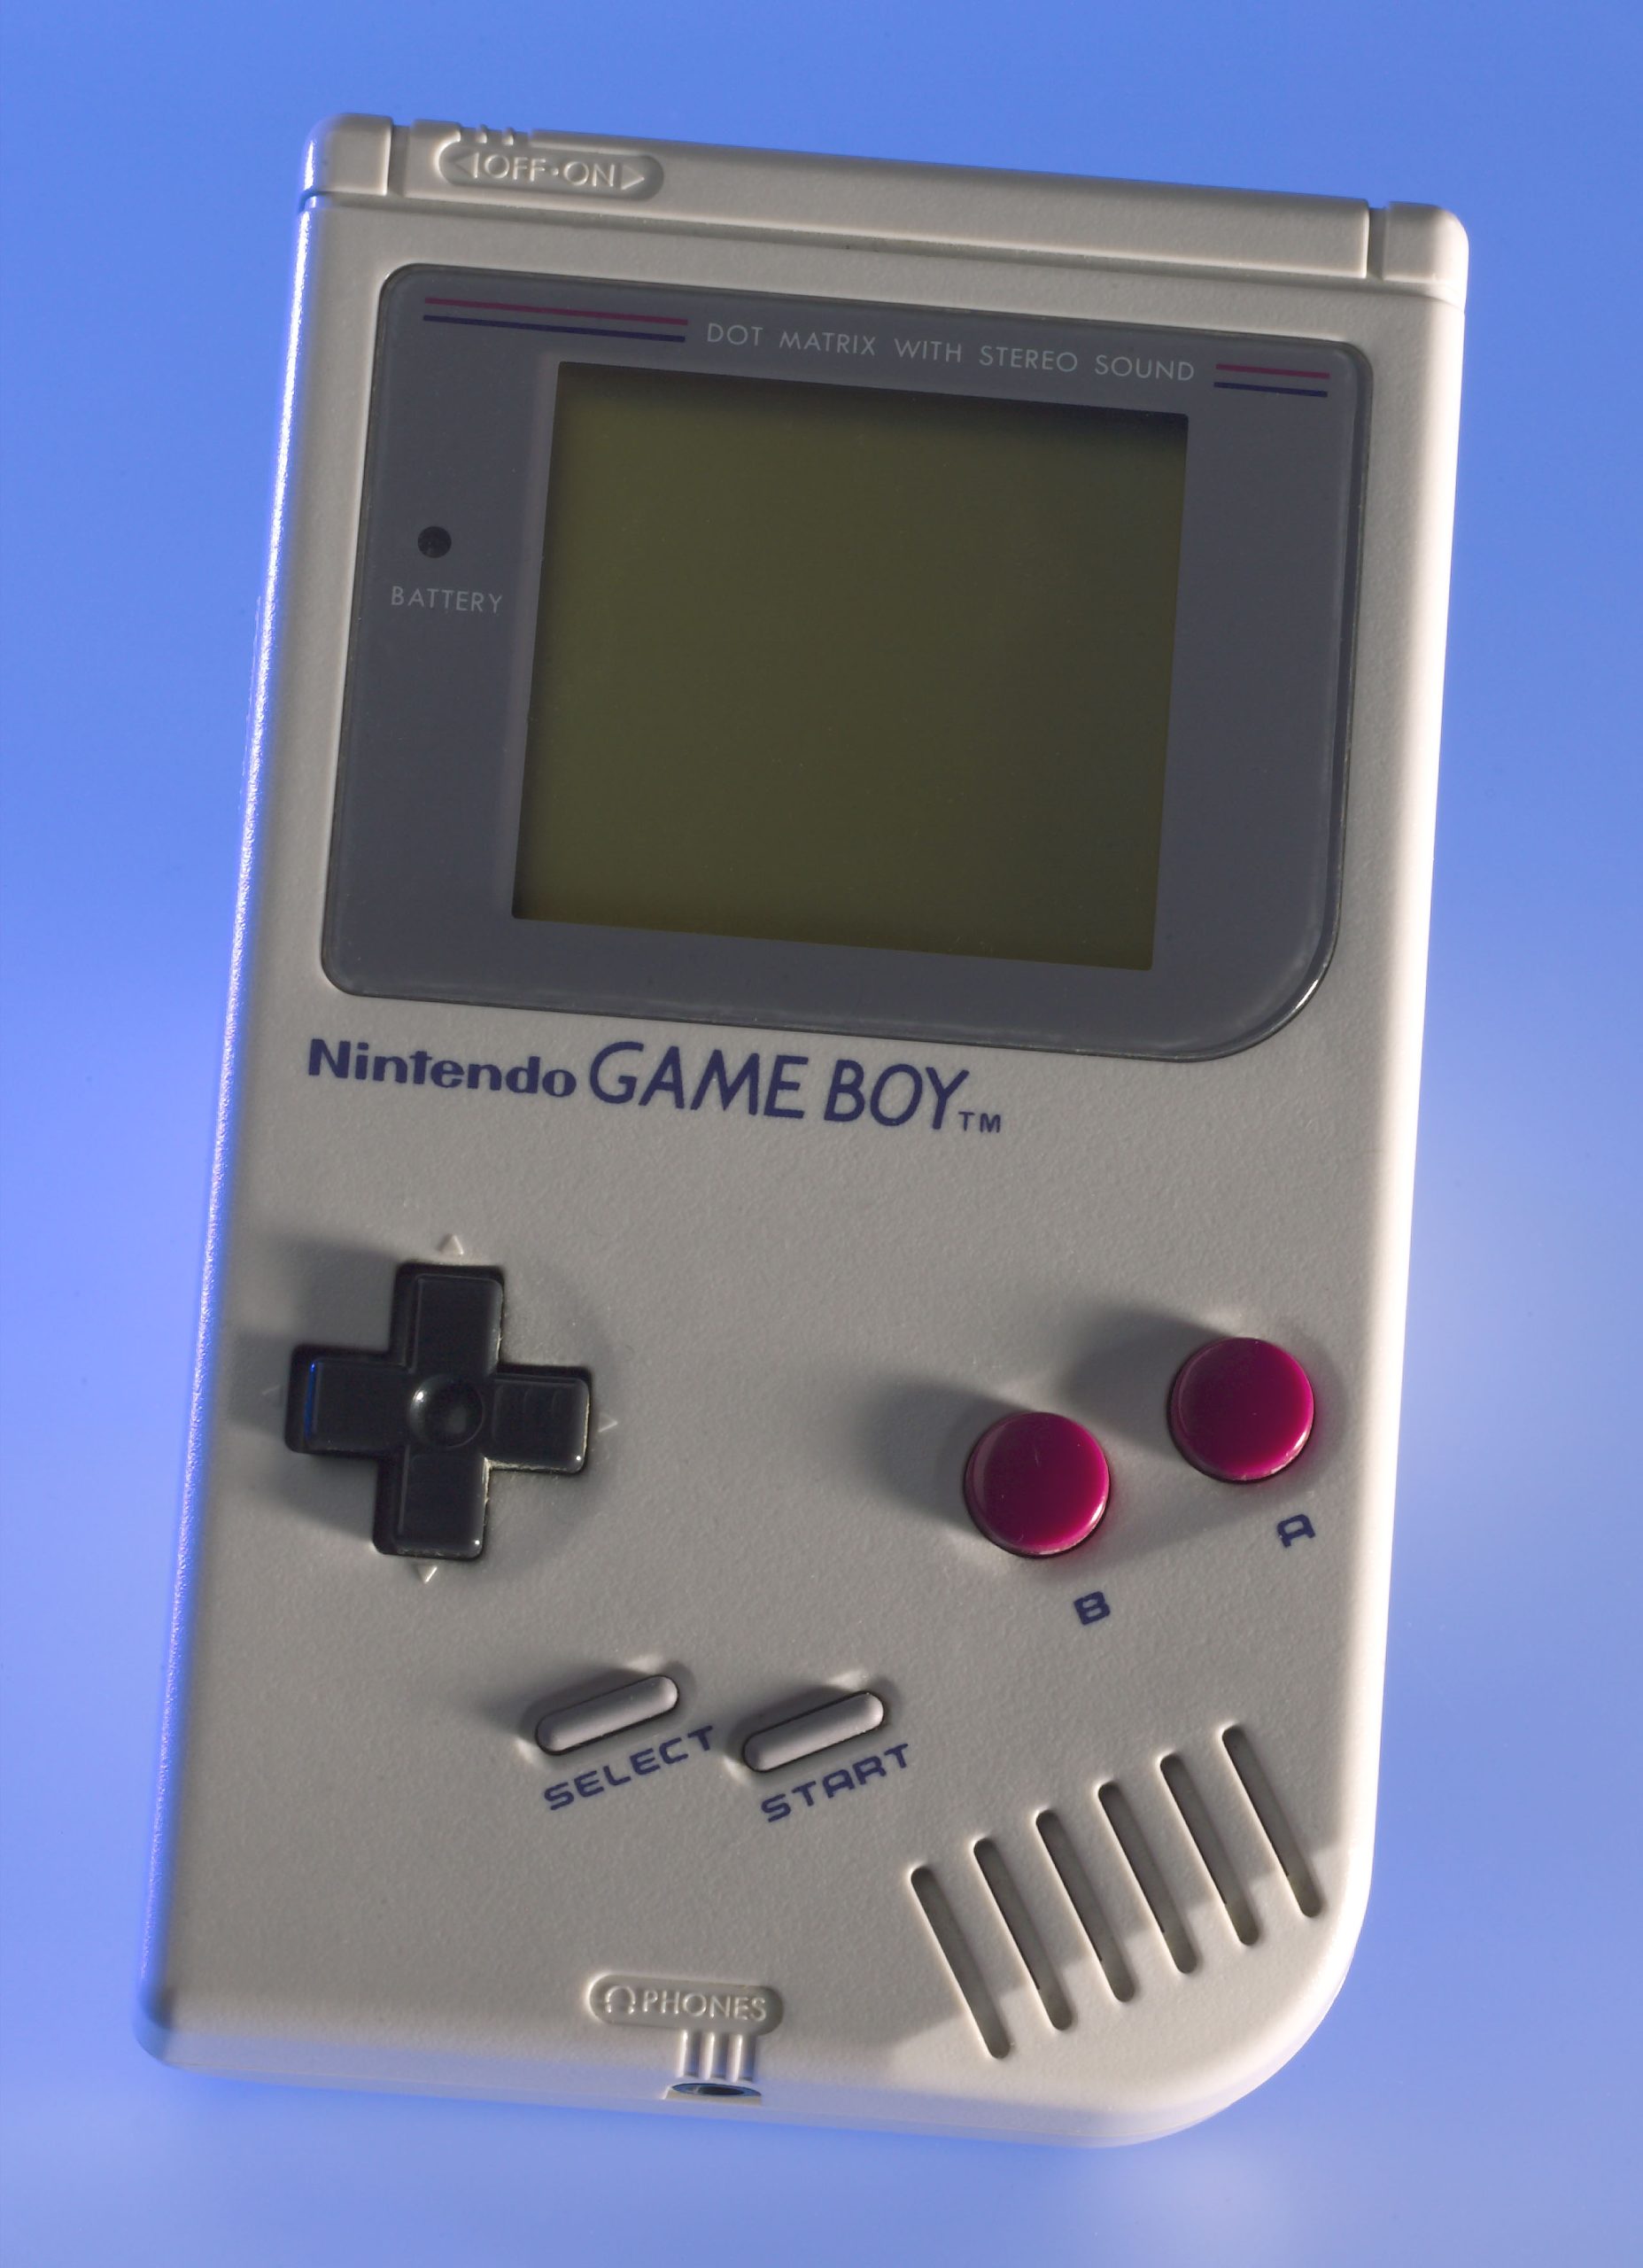 A Nintendo Game Boy egyik legnépszerűbb játéka volt a Tetris - én nem ezen játszottam vele